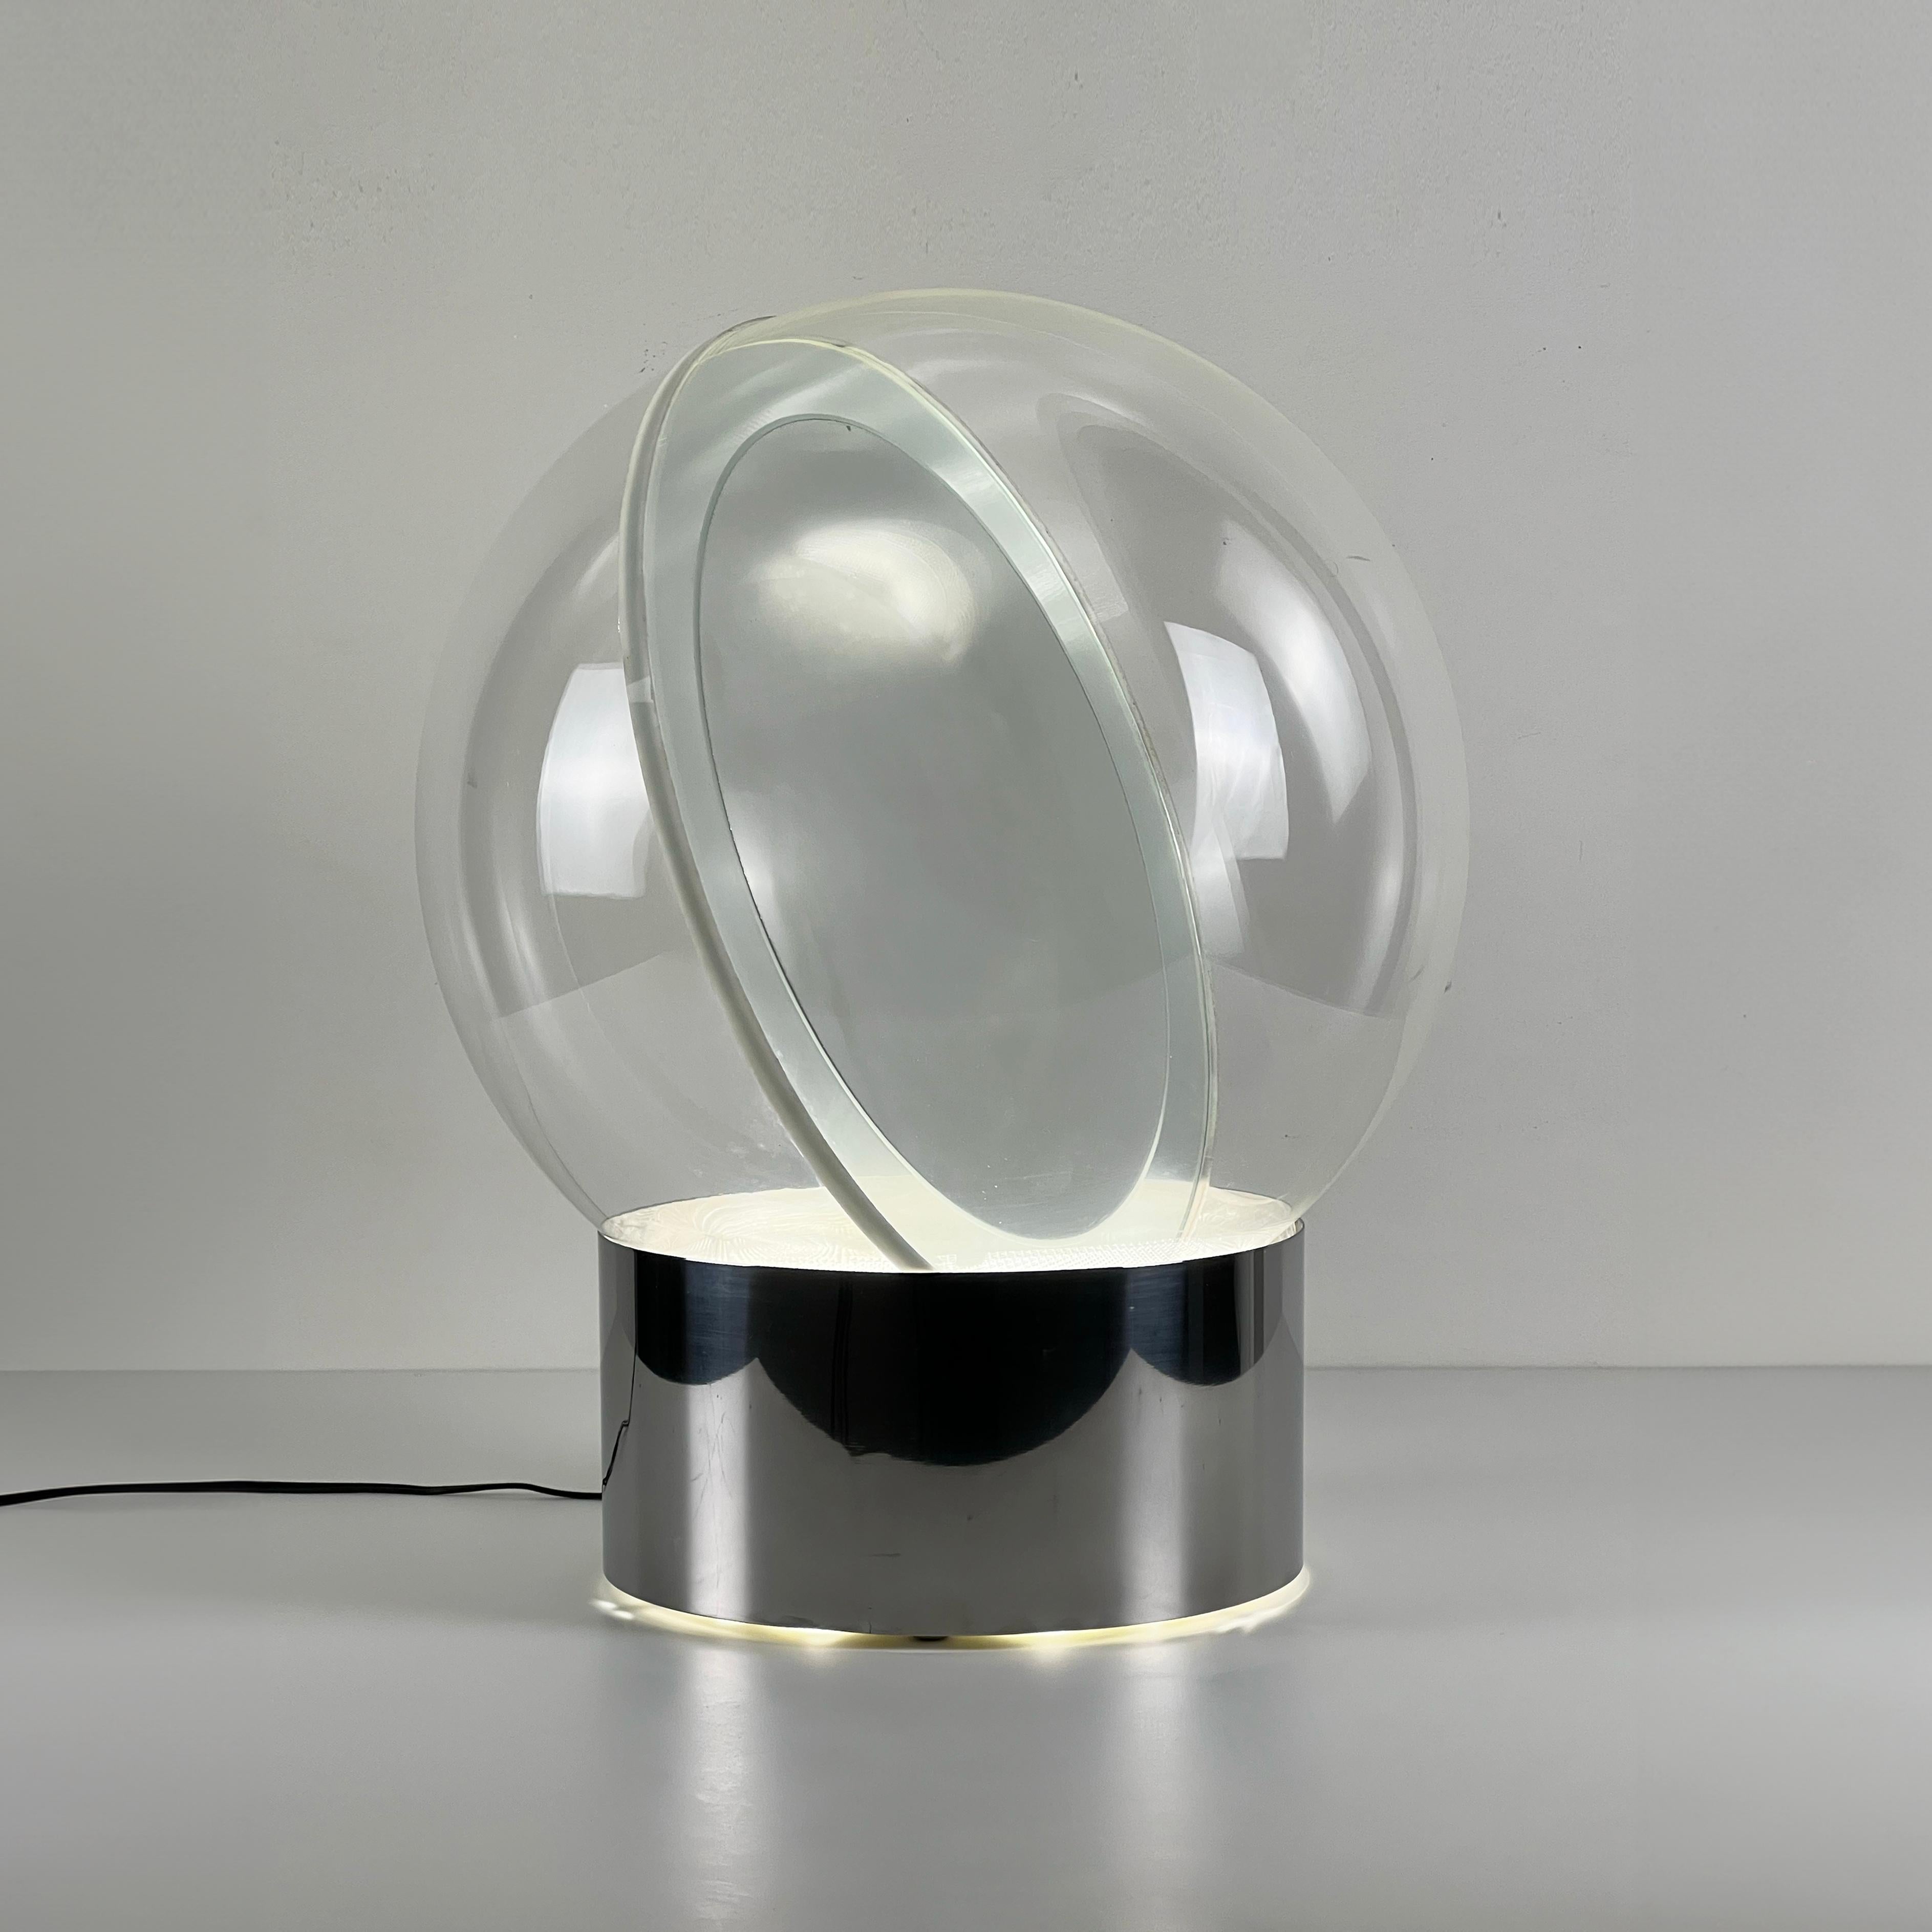 Lampe sphérique conçue par le designer italien Filippo Panseca pour Kartell, dessinée à la fin des années 1960. À l'intérieur de la sphère de verre, un miroir est positionné en diagonale et reflète latéralement la lumière du néon, créant ainsi une